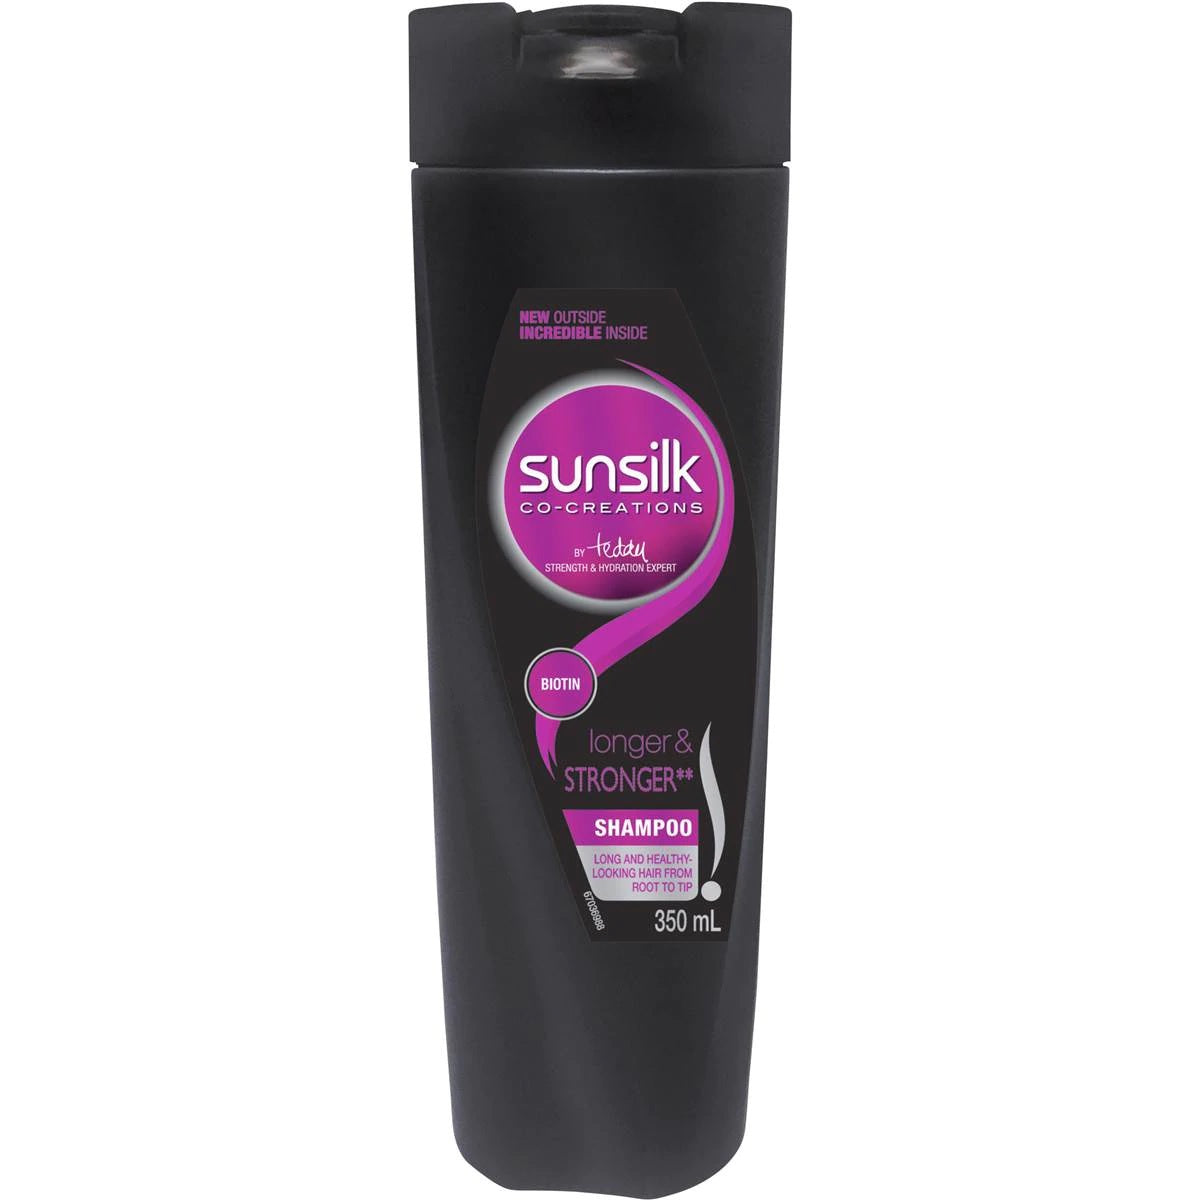 Sunsilk Longer & Stronger Shampoo 350mL